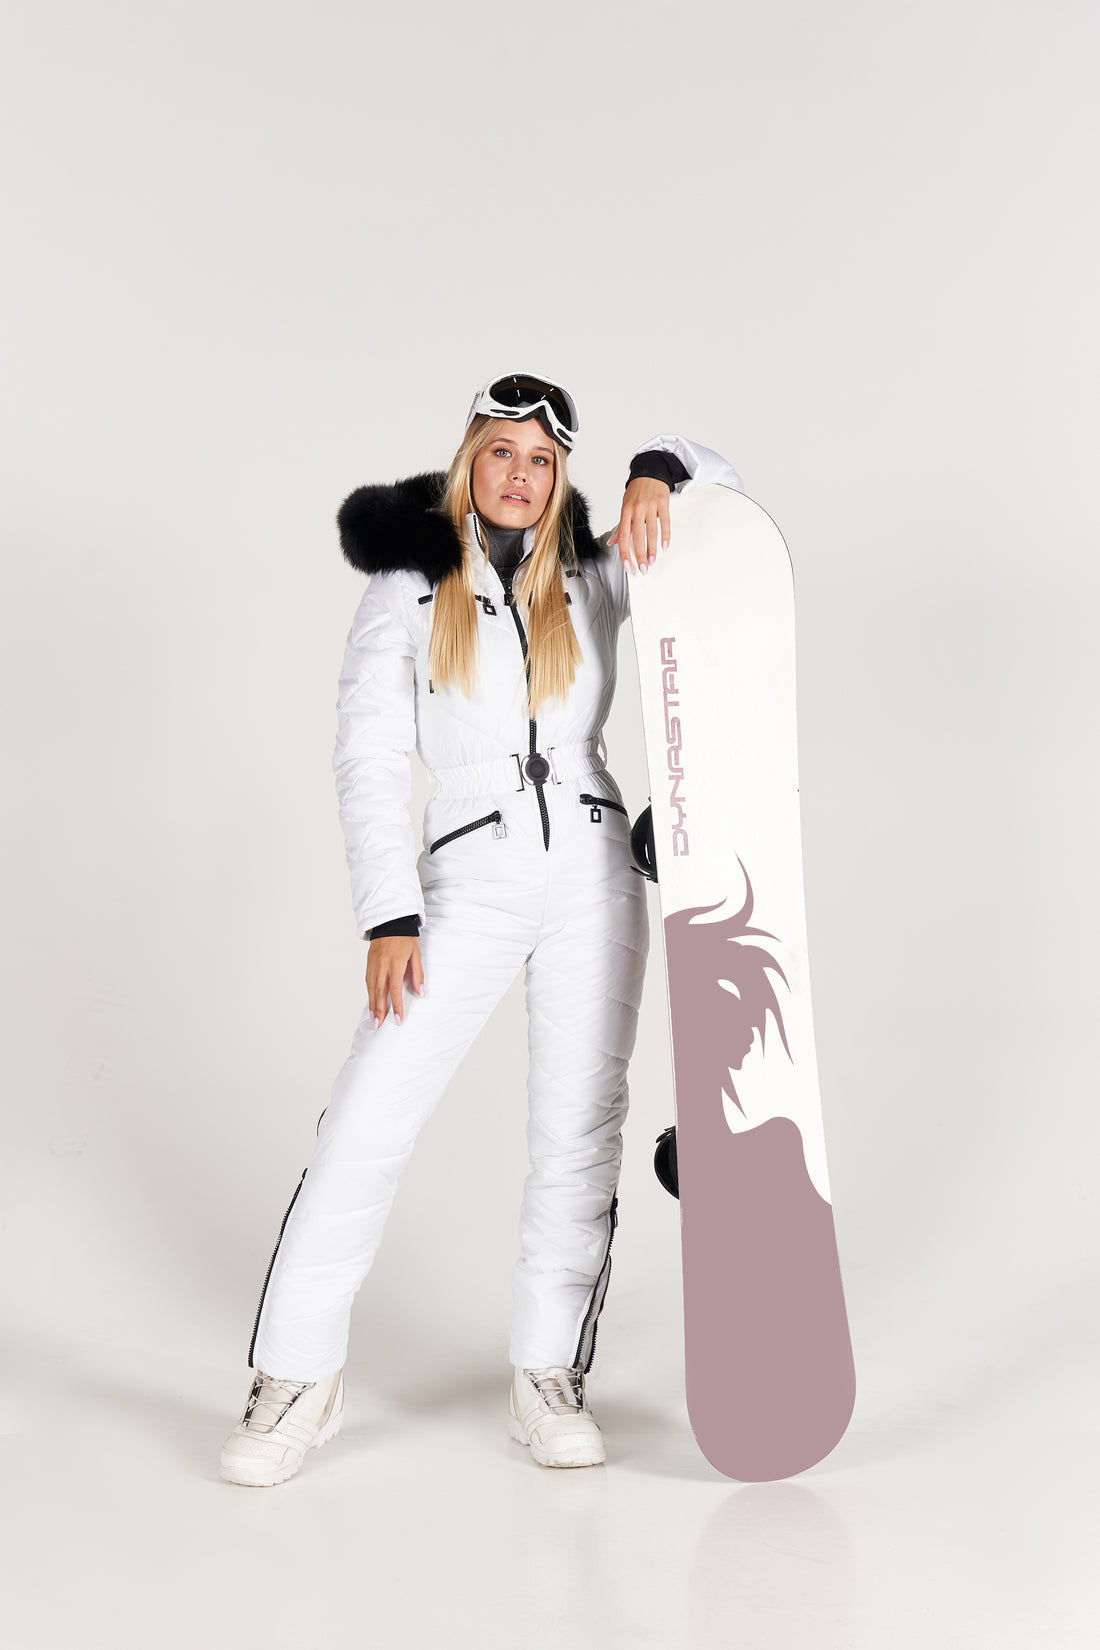 White Ski Suit for Women Snowsuit One Piece Ski Suit Warm Snow